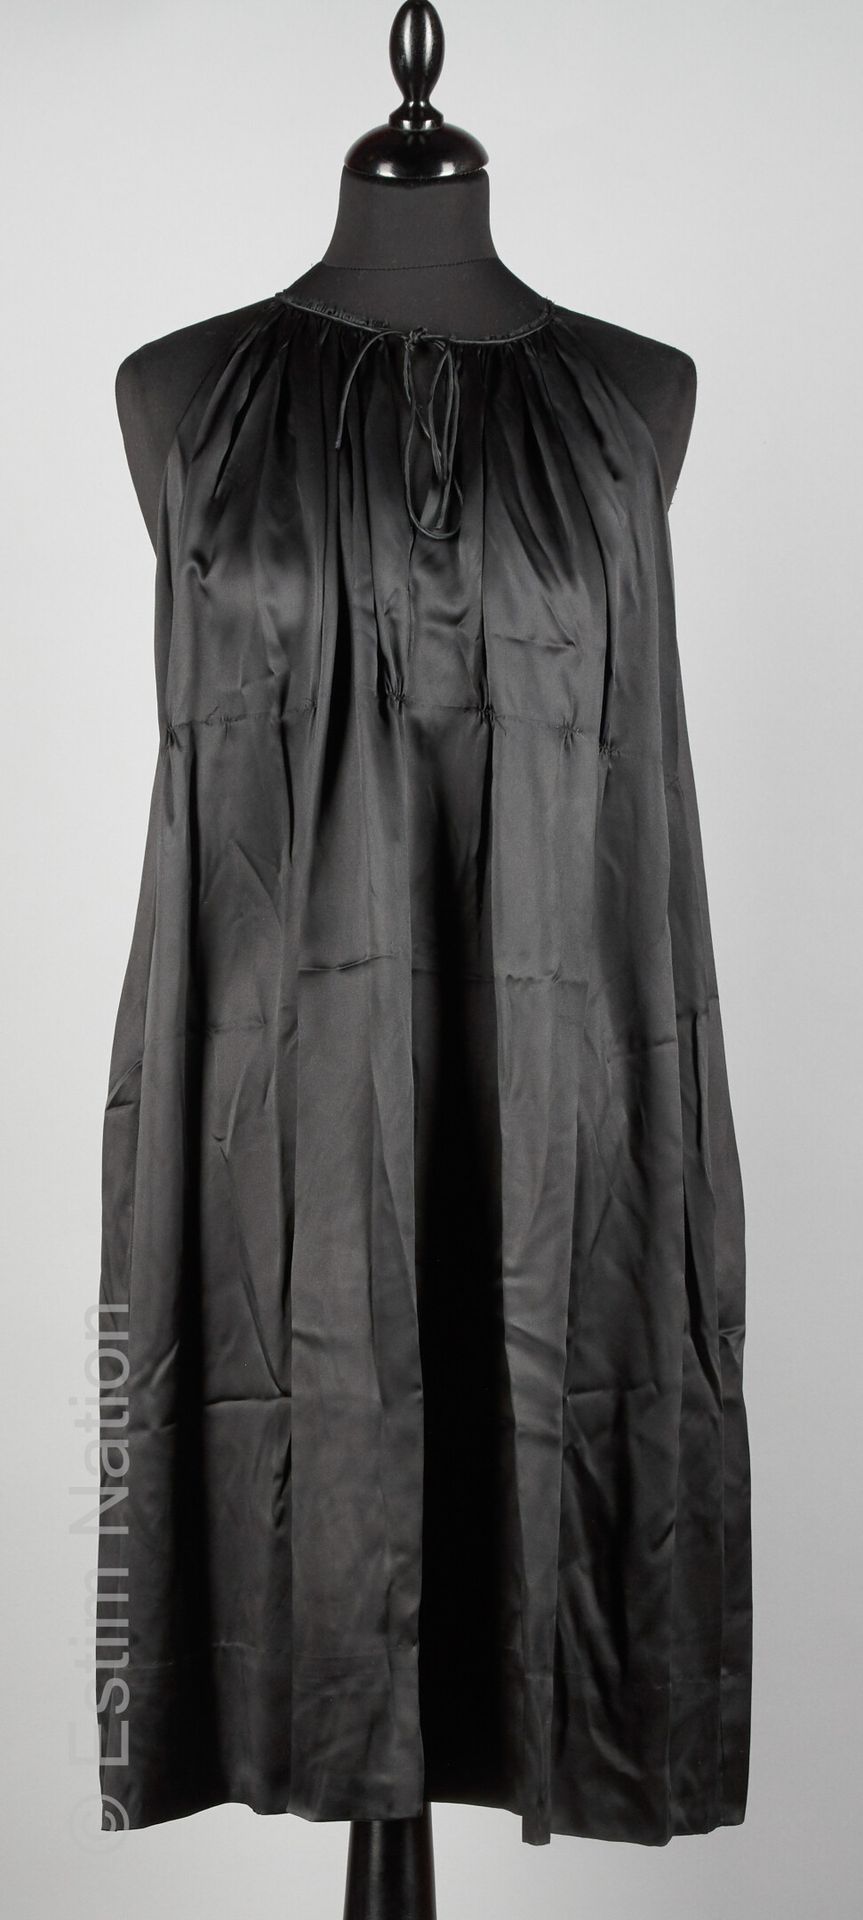 MAJE ROBE foulard en satin de soie noir, liens coulissés sur l'encolure (T U)